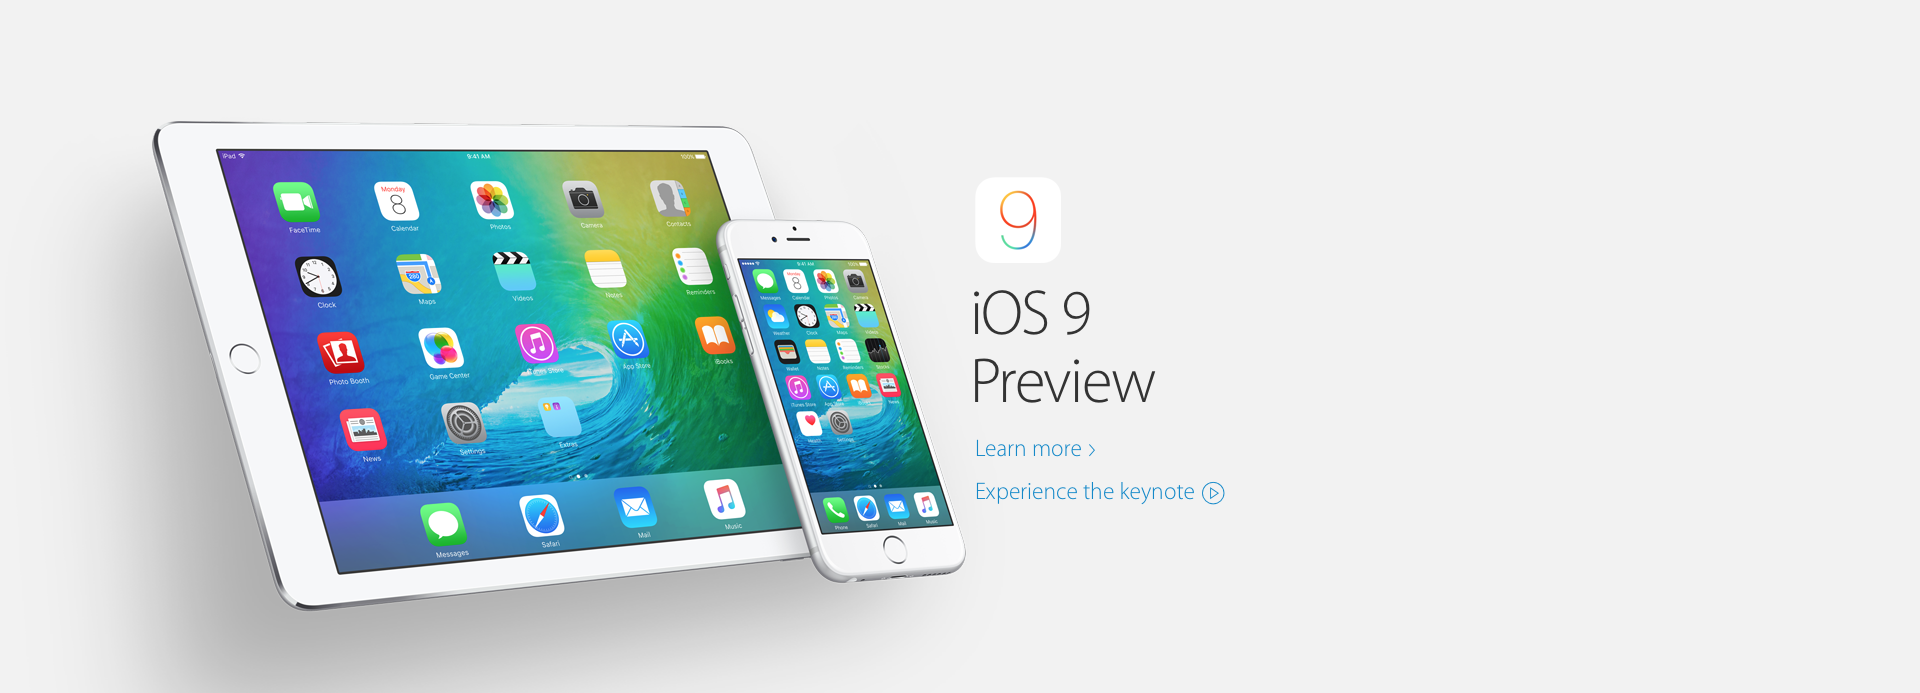 Компания Apple добавила в iOS 9 многозадачность